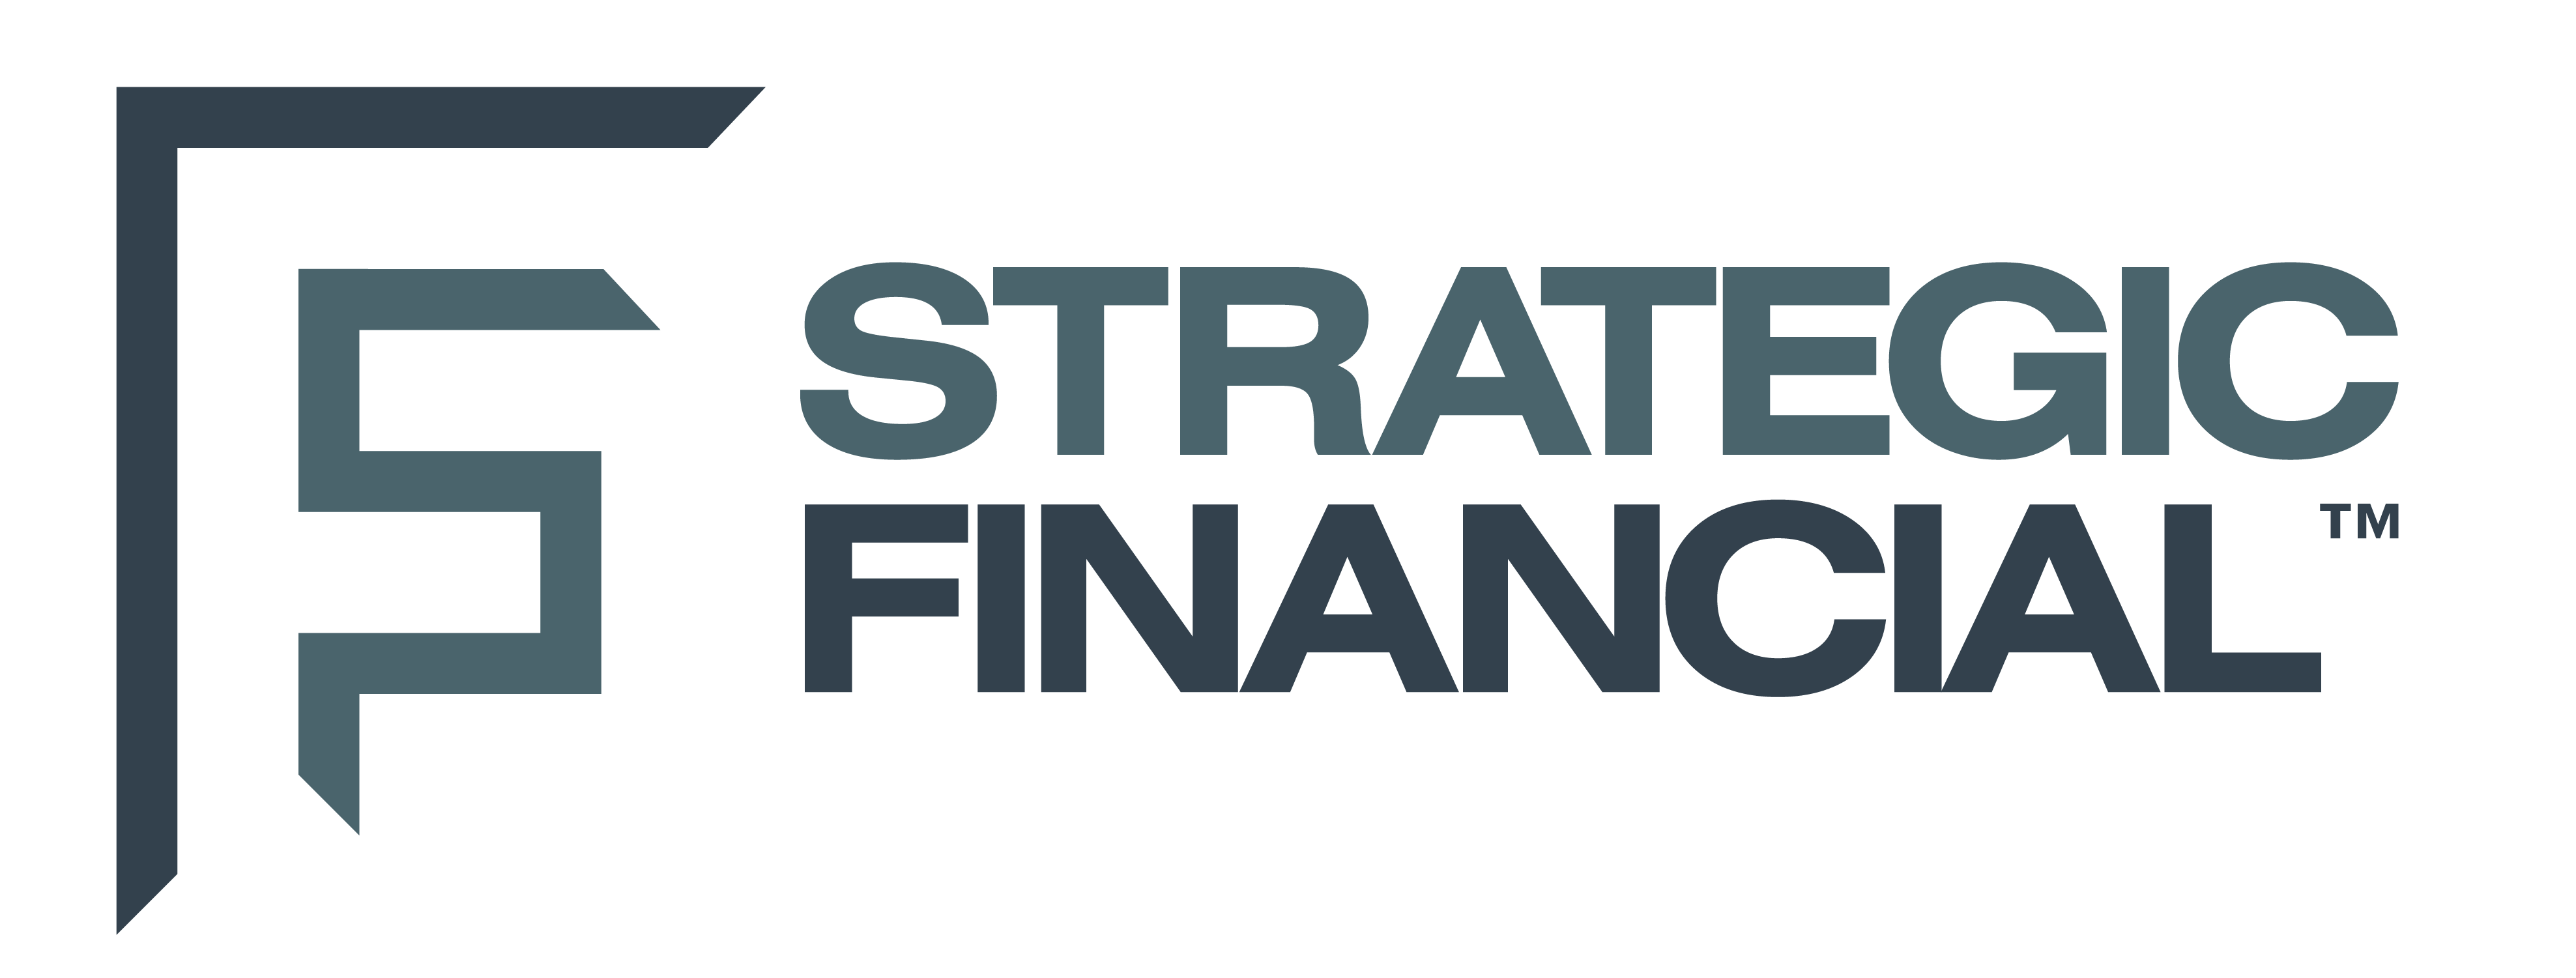 Strategic Financial_Logo-01